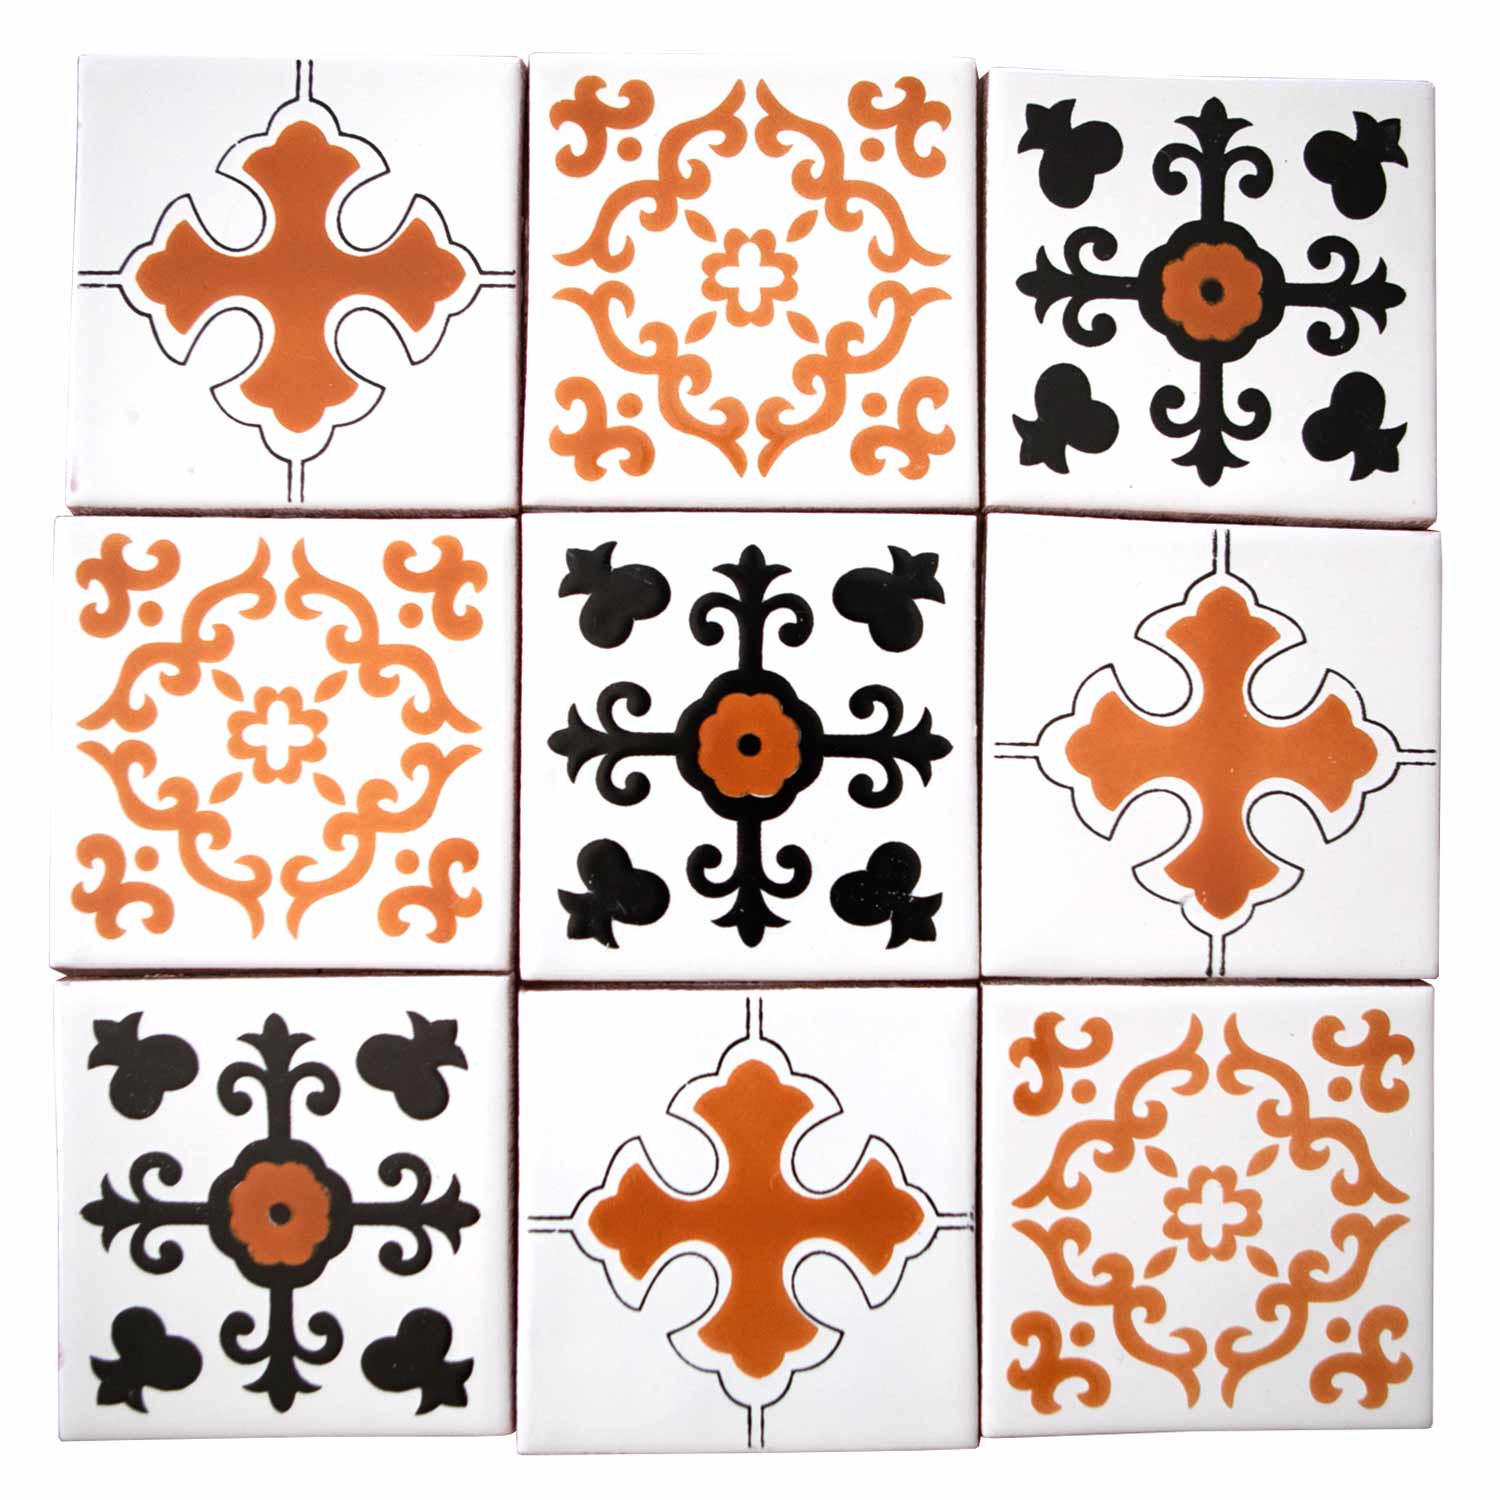 Mixed Tiles Pattern 12 — Jaha Tiles